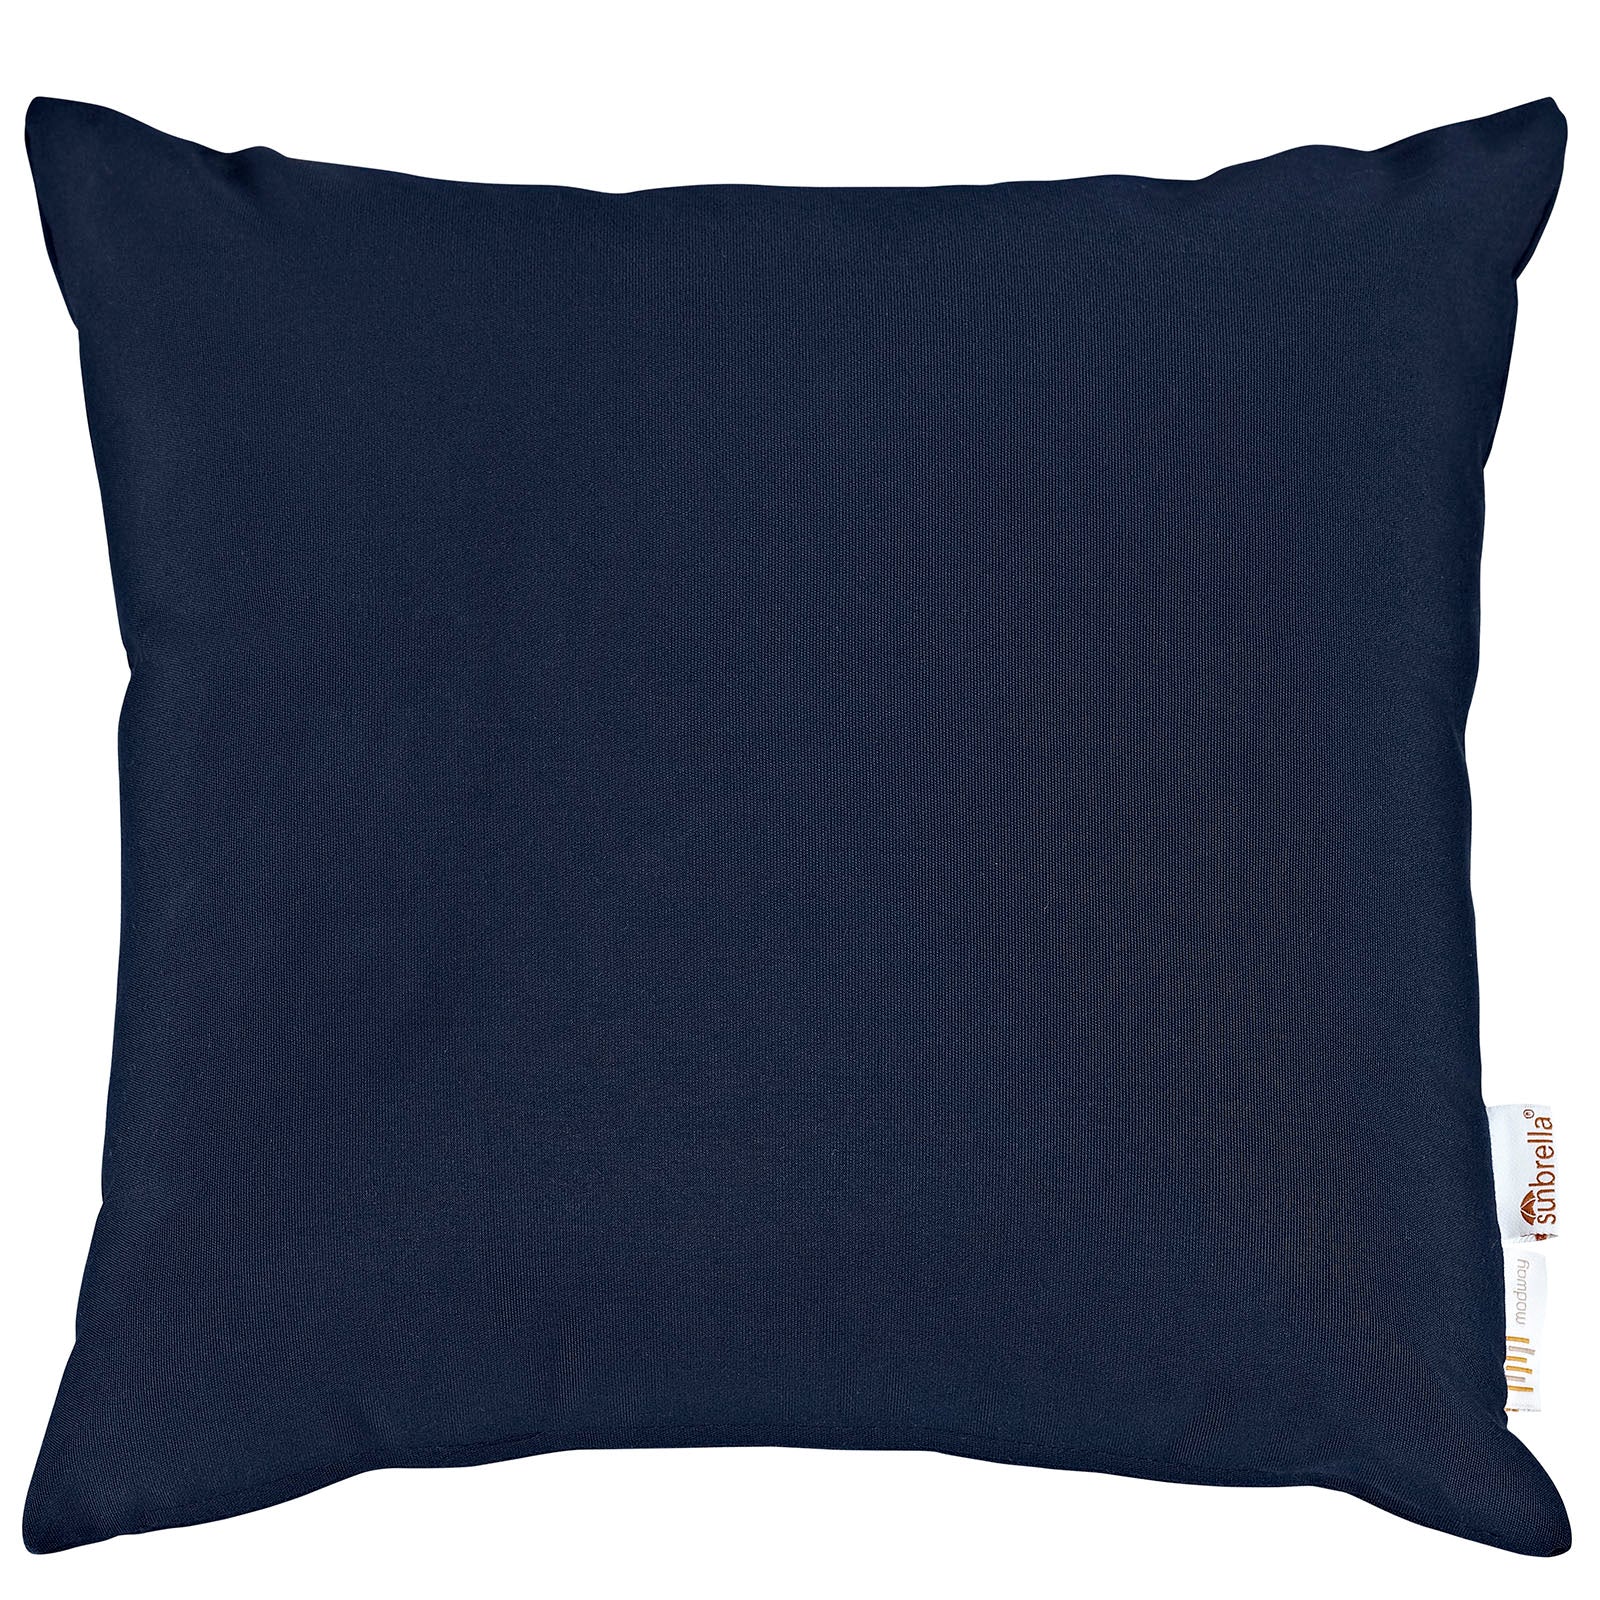 Modway Outdoor Pillows & Cushions - Summon 2 Piece Outdoor Patio Sunbrella Pillow Set Navy